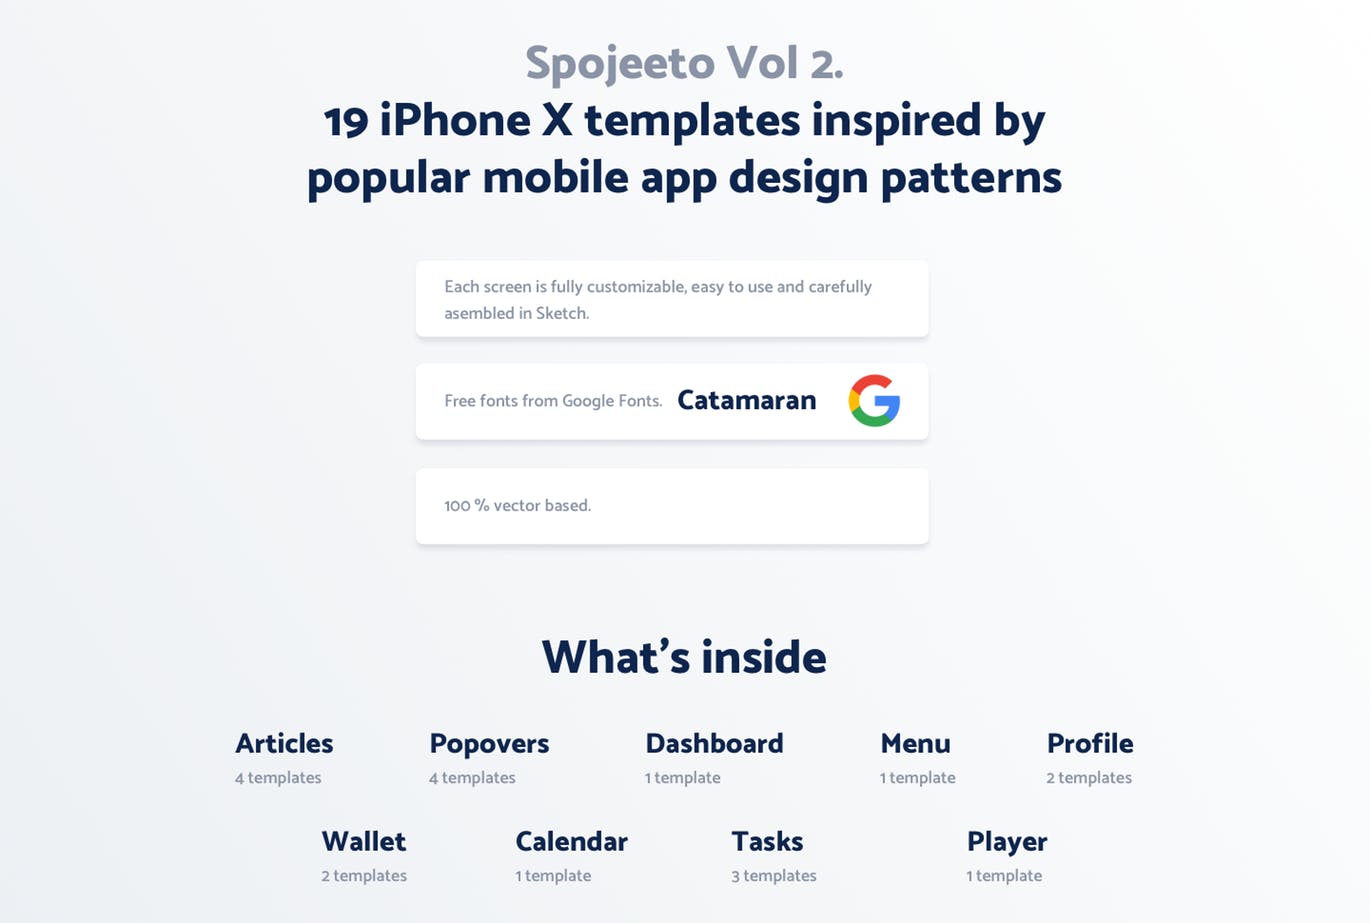 极简主义设计风格APP应用UI设计第一素材精选套件v2 Vol. 2 – Spojeeto Mobile App UI Kit插图(1)